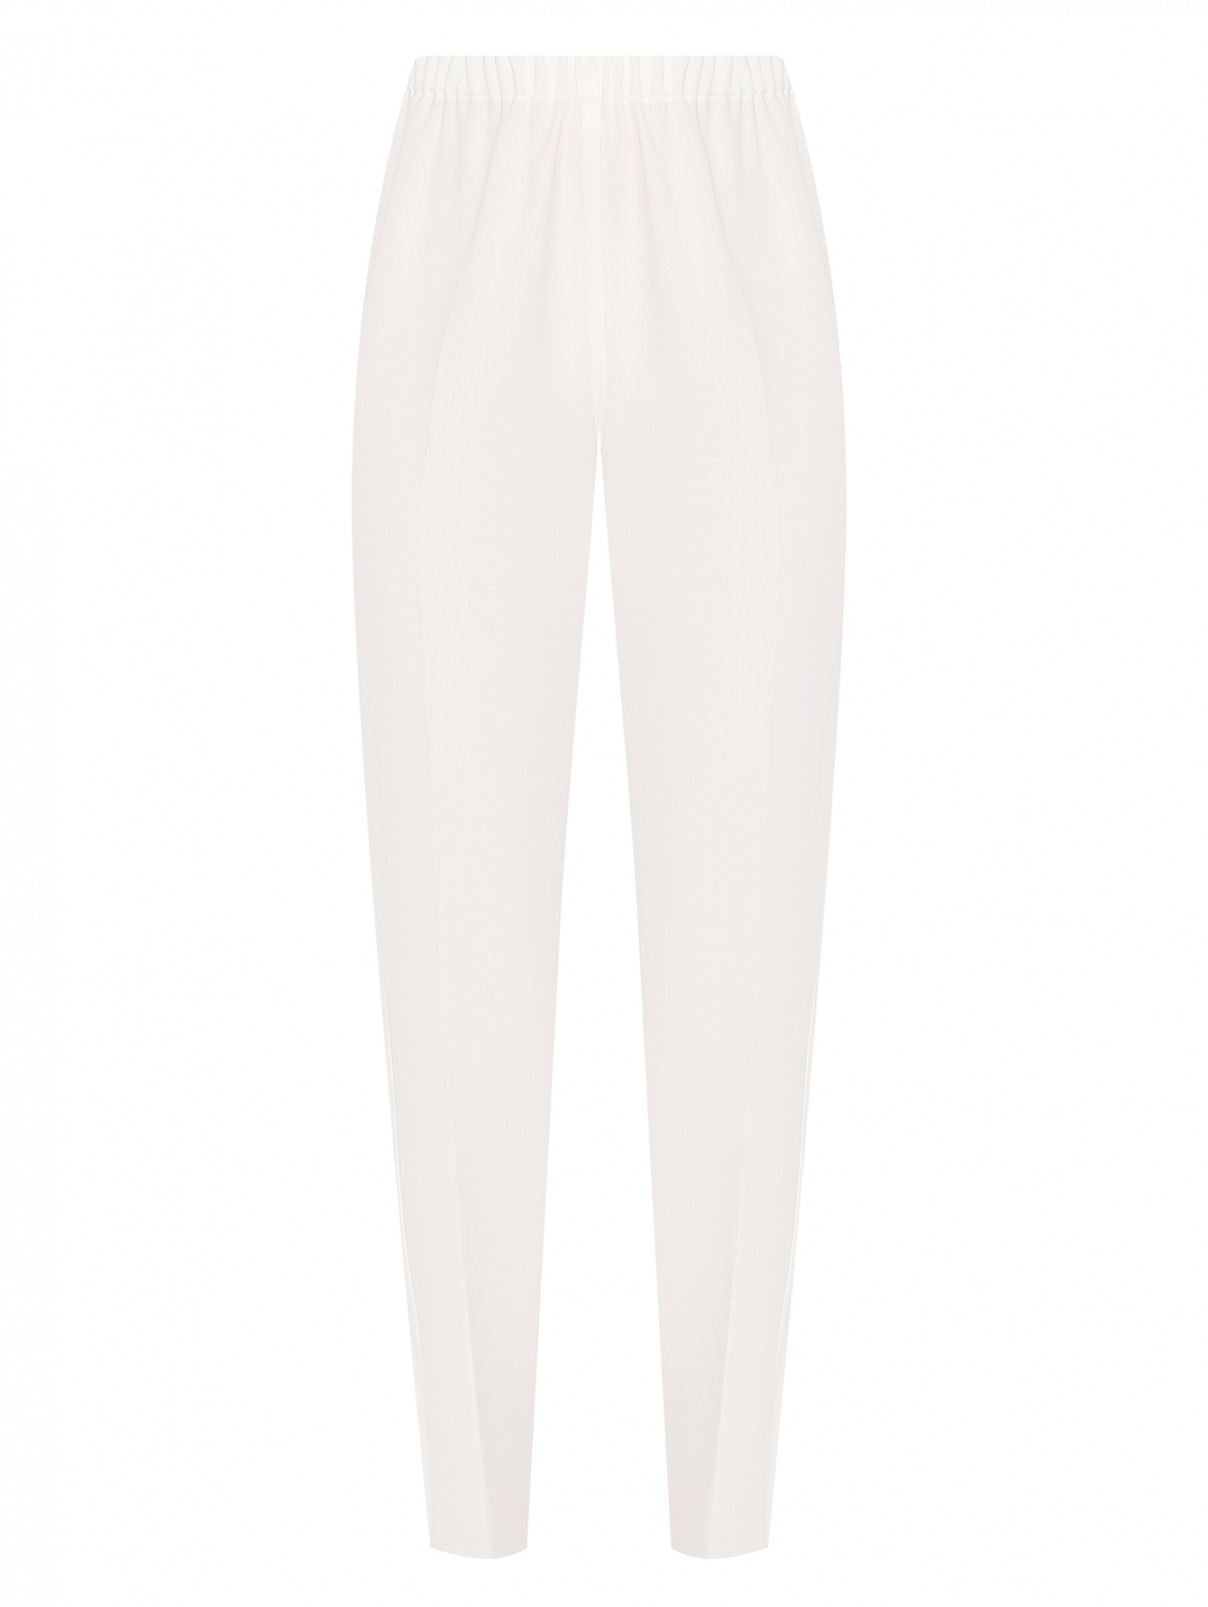 Однотонные брюки на резинке Marina Rinaldi  –  Общий вид  – Цвет:  Белый